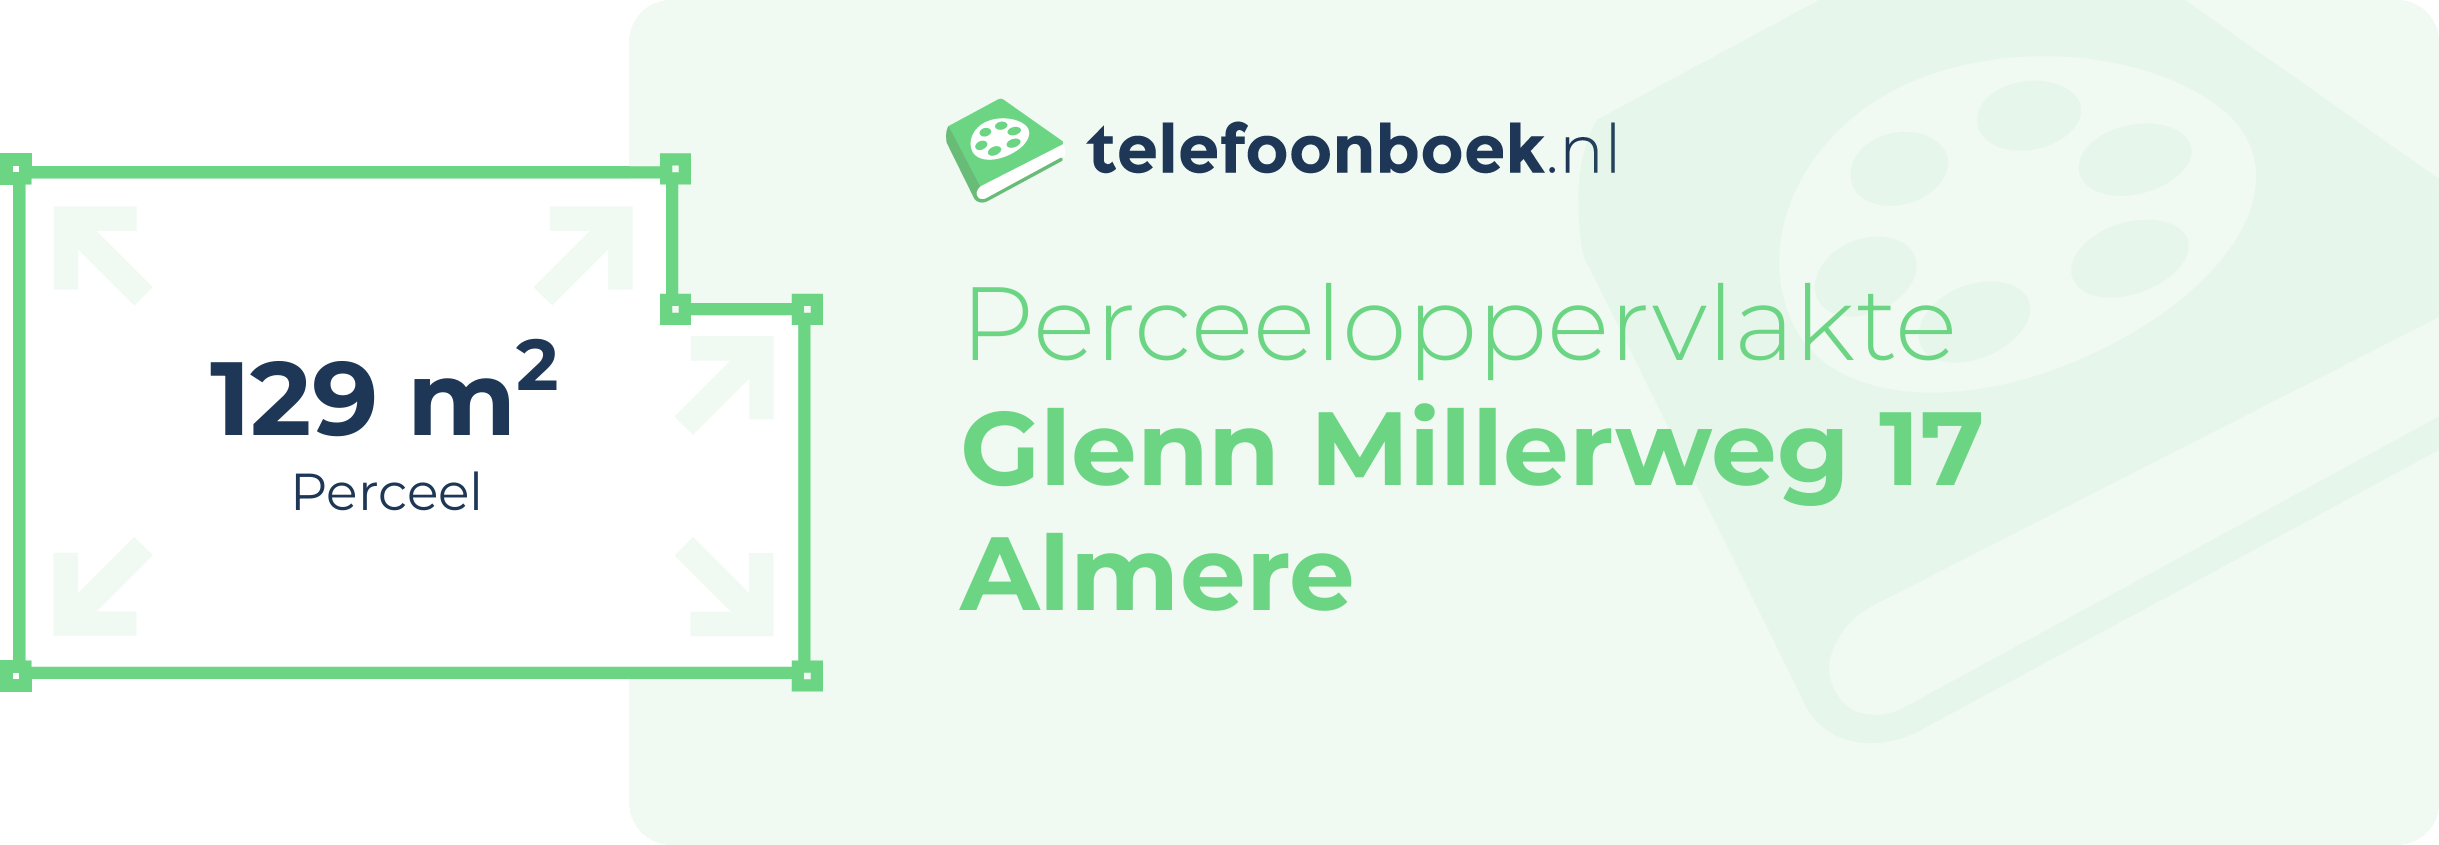 Perceeloppervlakte Glenn Millerweg 17 Almere